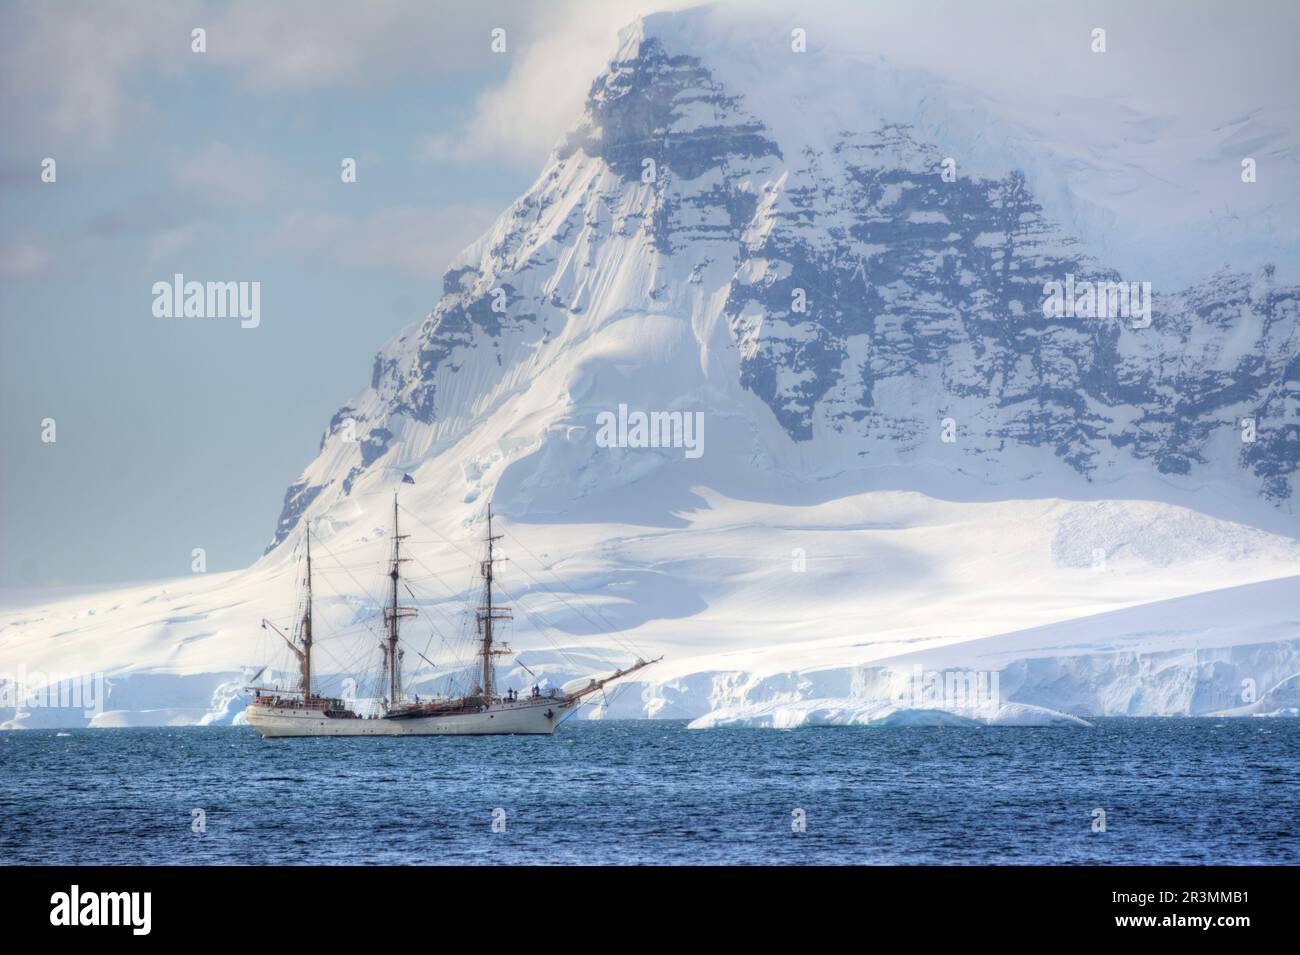 Segeln mit Bark Europa auf einer Antarktis-Kreuzfahrt Stockfoto